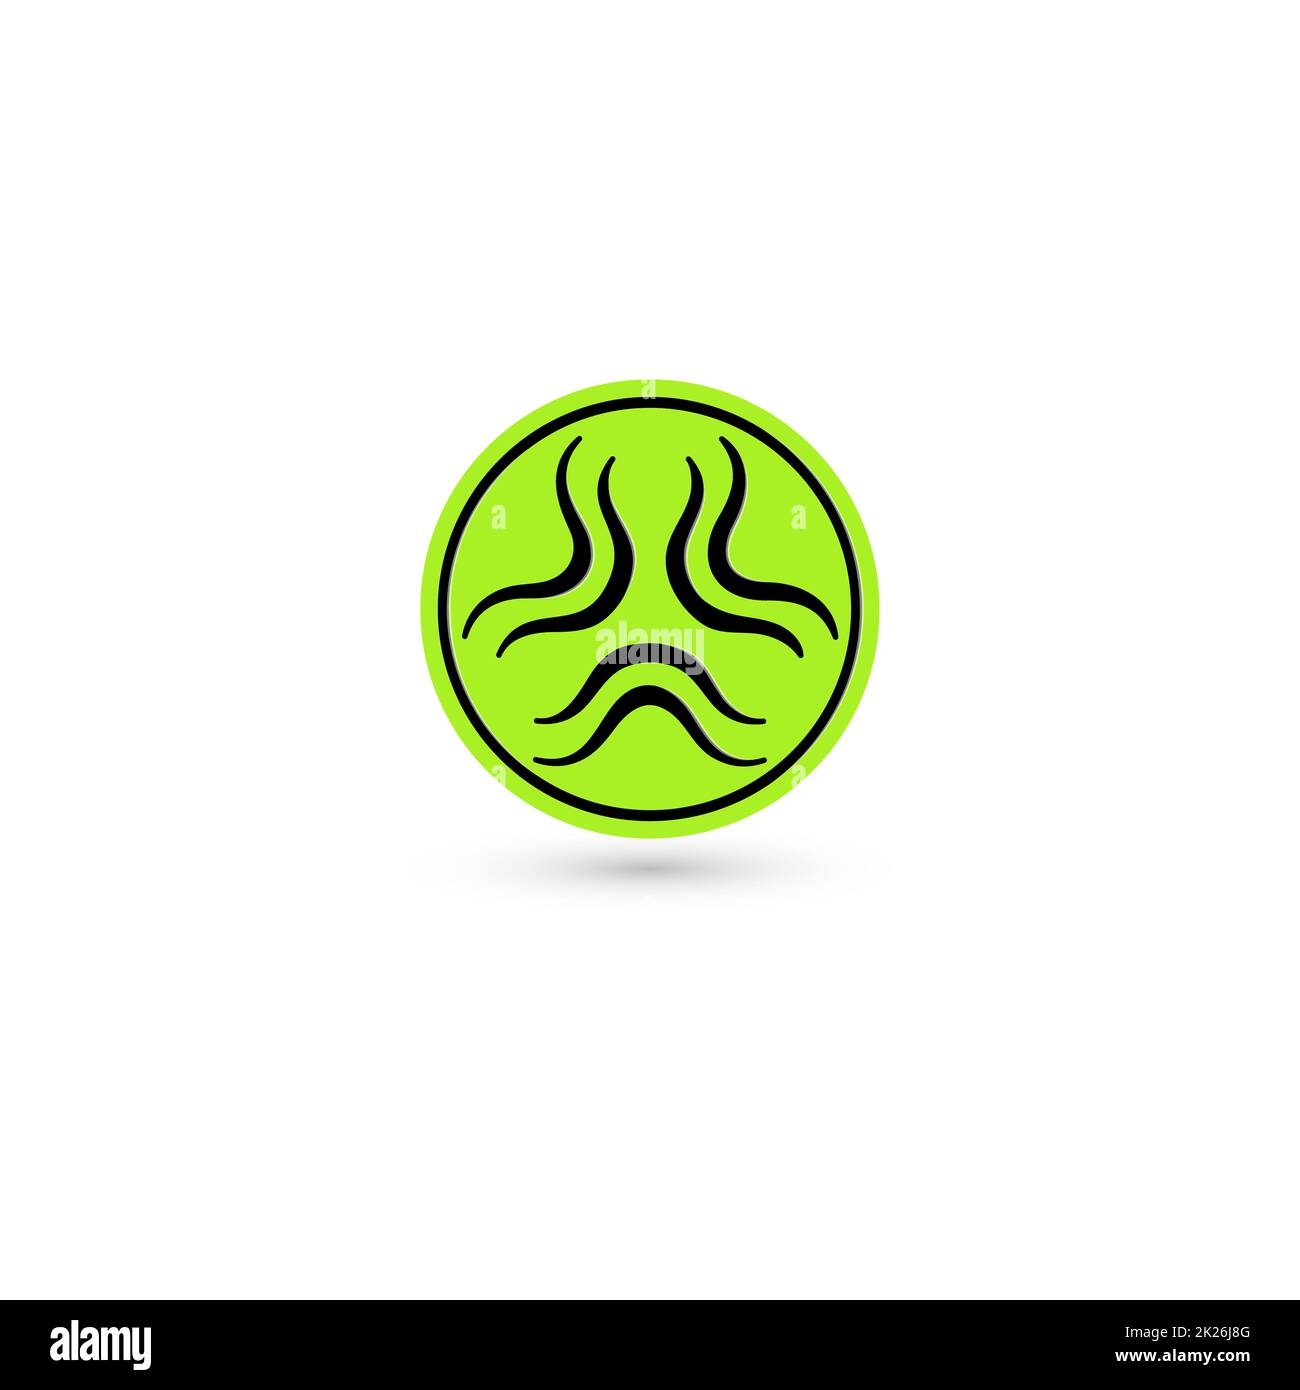 Tossico vettore verde icona. Pittogramma di radiazione. Rischio di biotossicità simbolo. Scienza reattore atomico tech semplice isolato logo chimici Foto Stock